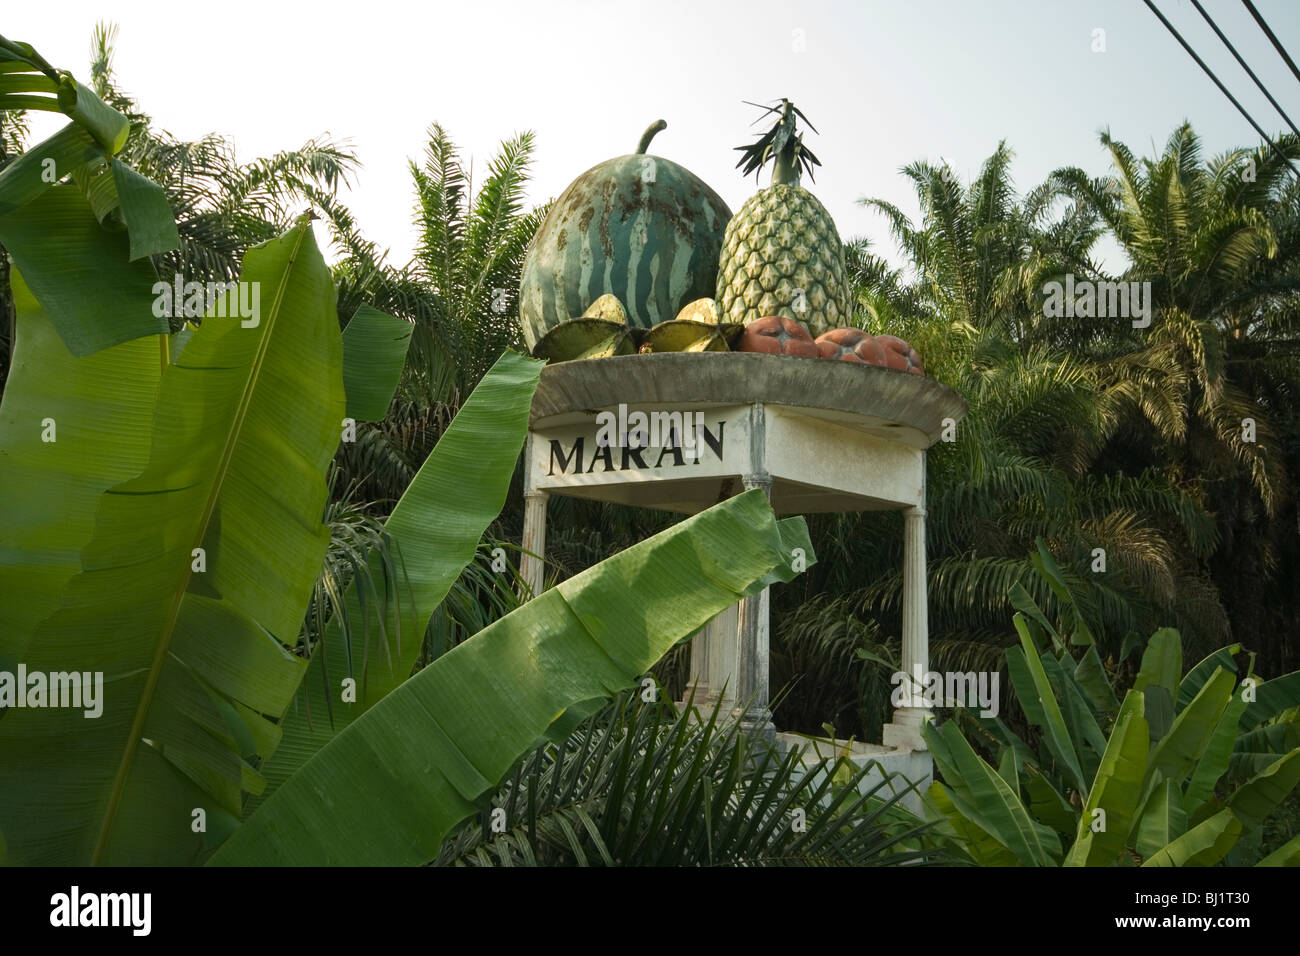 Fruchtigen Schild mit Beginn des Bezirks Maran von Pahang, Malaysia Stockfoto